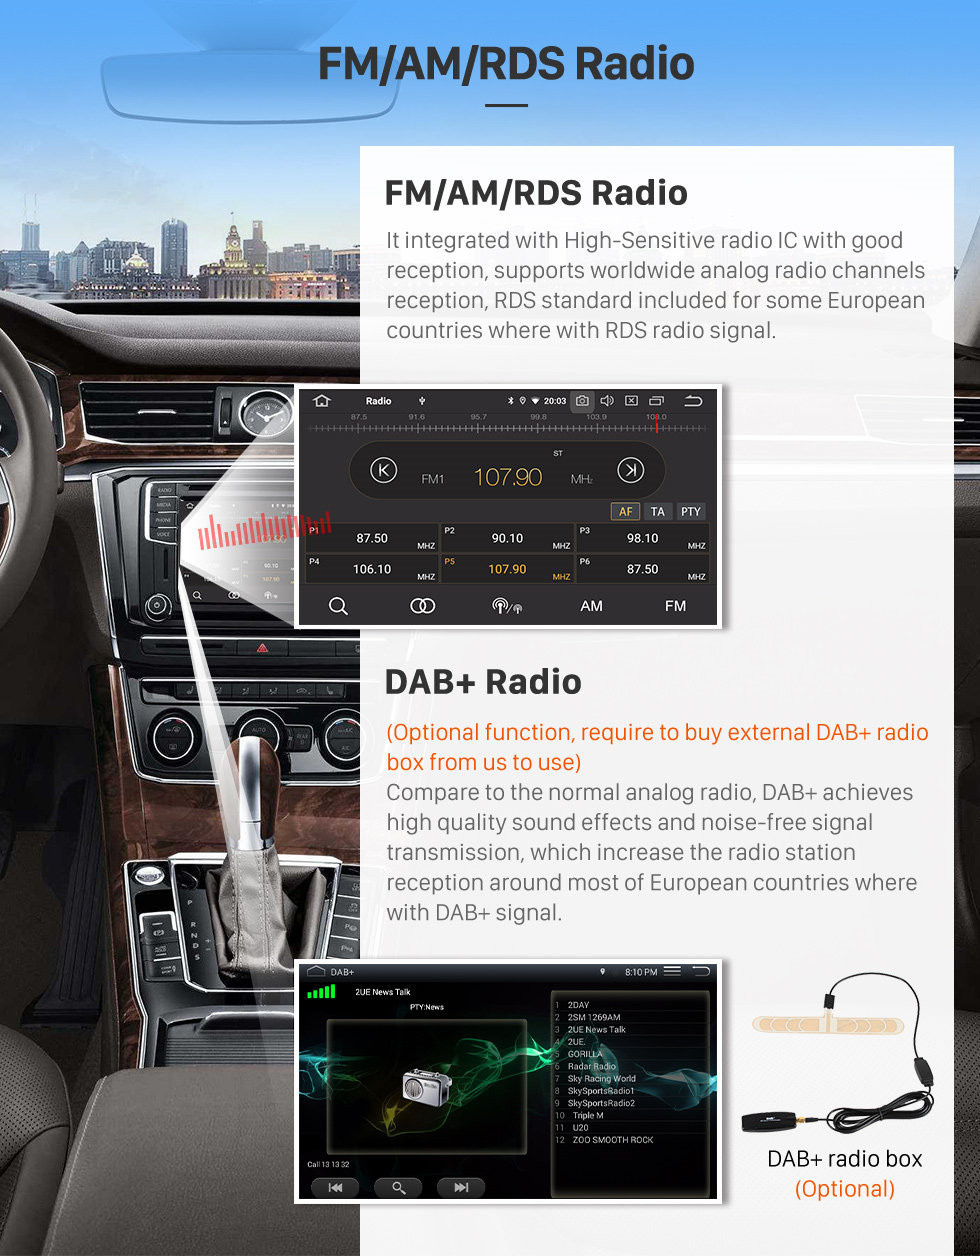 Seicane Um din Android 11.0 9 polegadas Rádio para 2011 2012 2013 Nissan Old SUNNY com Quad-core HD Touchscreen GPS Bluetooth Navi Carplay USB 4G WIFI AUX RDS